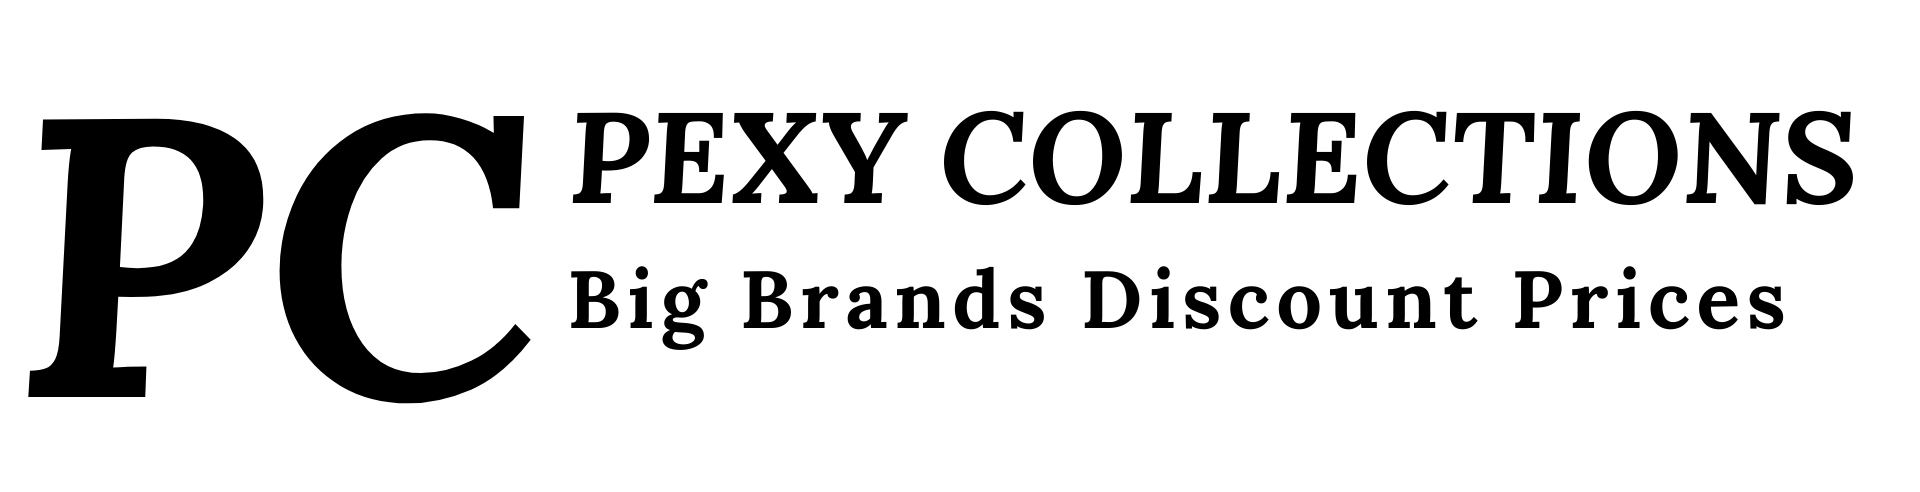 PexyCollections Logo